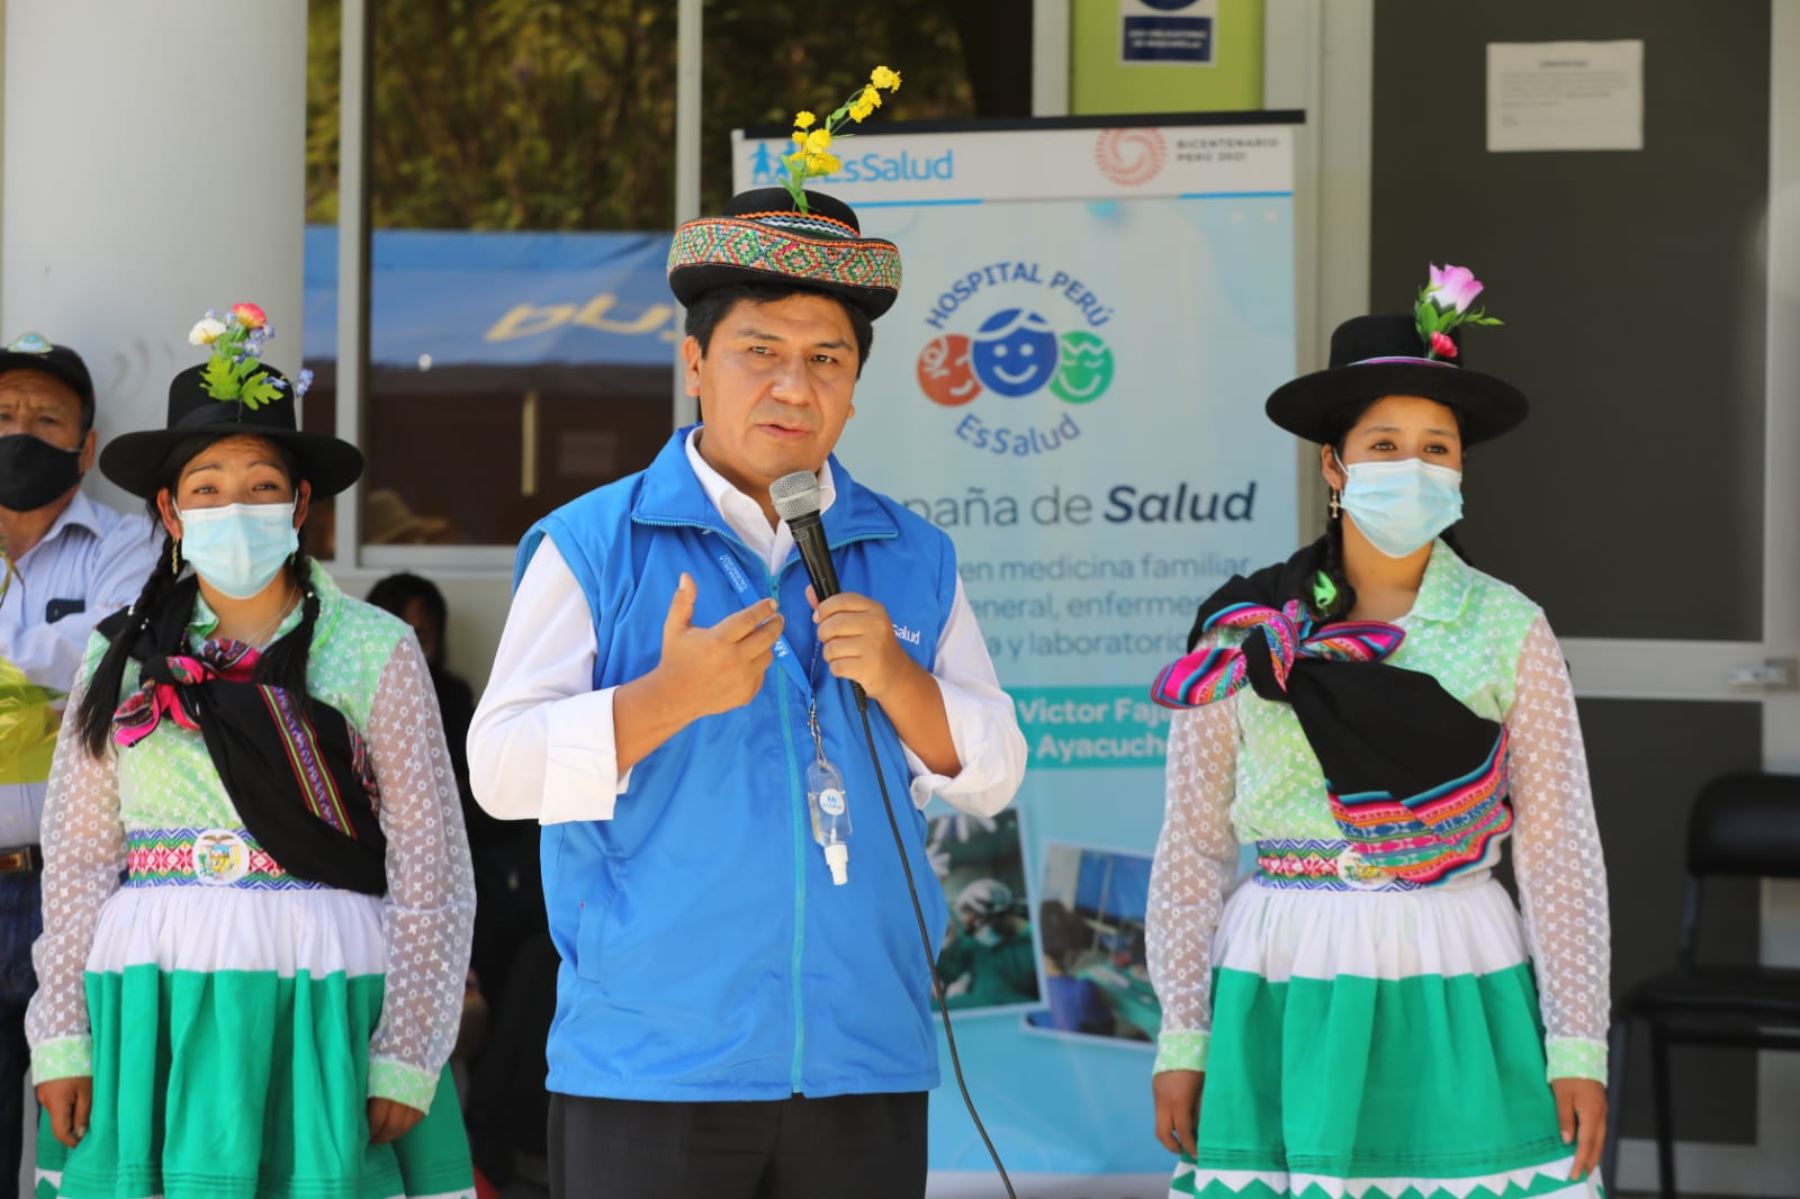 La Misión Ayacucho, como ha sido denominada la campaña, tiene por objetivo reducir la demanda de consultas, operaciones y tratamientos postergados por la pandemia. Foto: ANDINA/Difusión